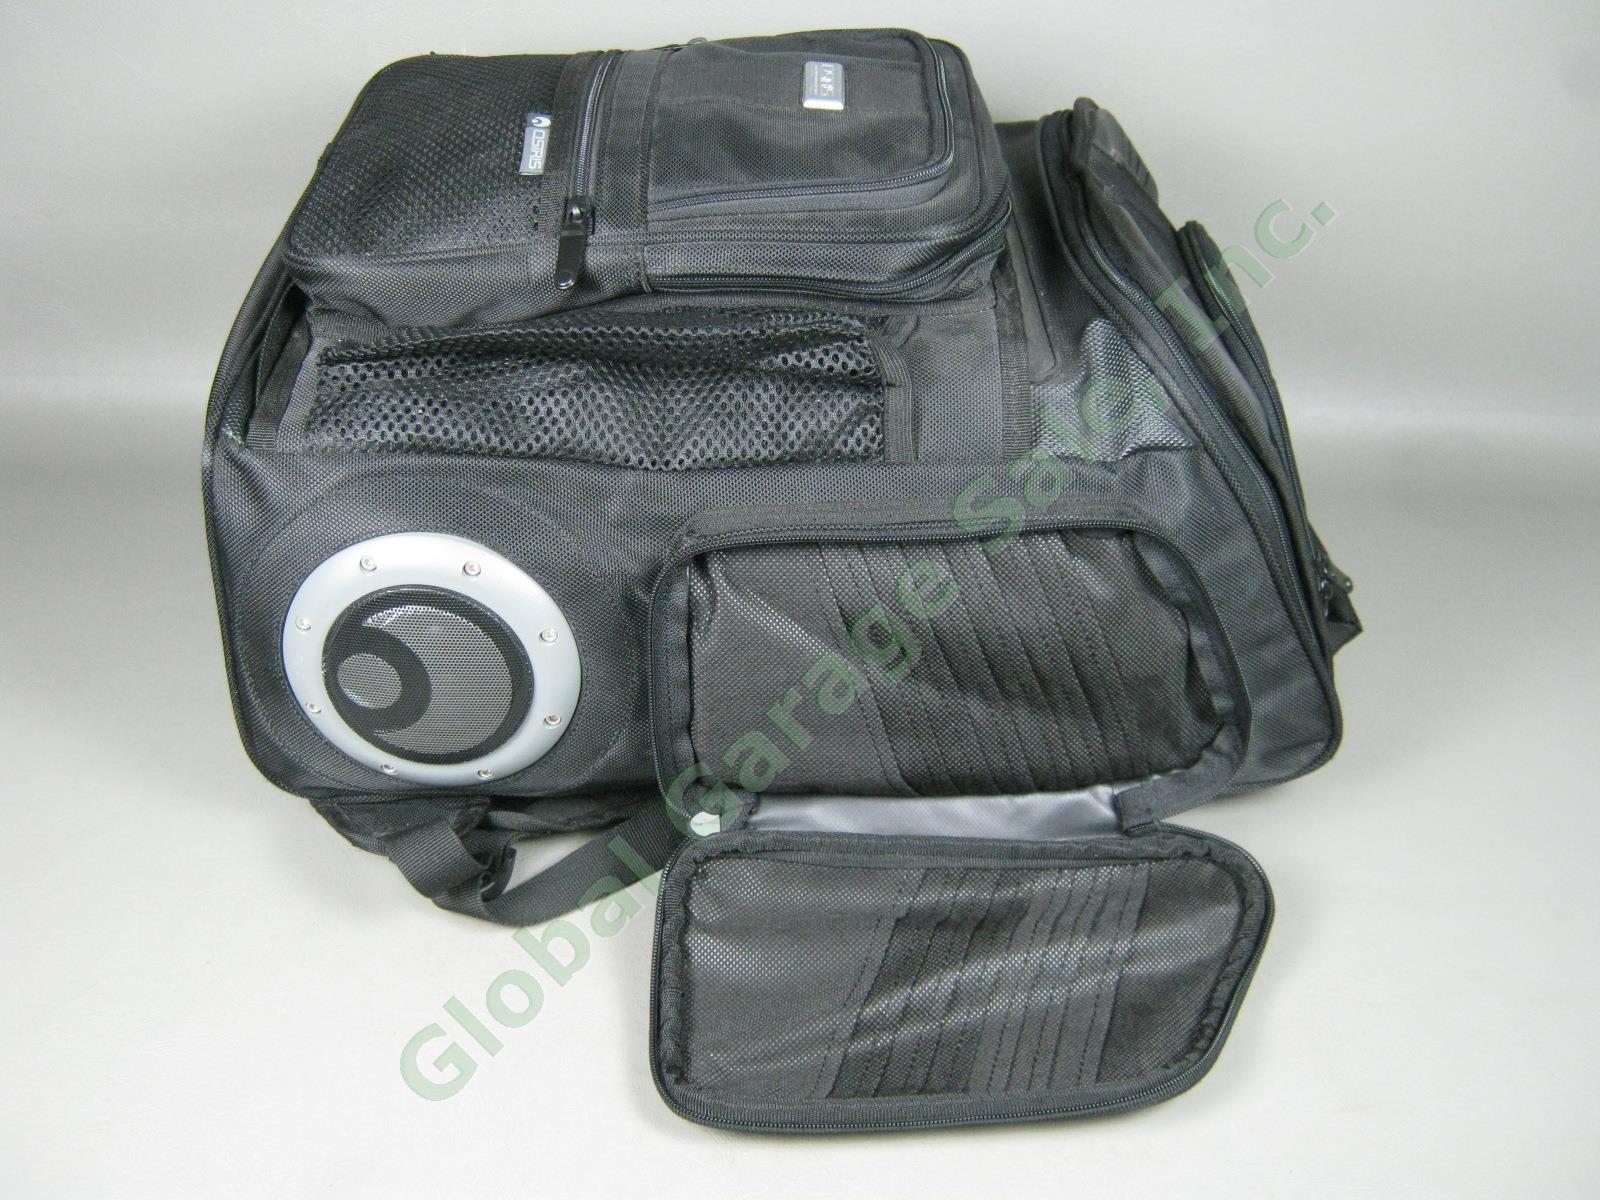 NOS Osiris G-Bag Metatron 2100 Backpack Skate Pack w/ Stereo Speakers + Amp NR! 7